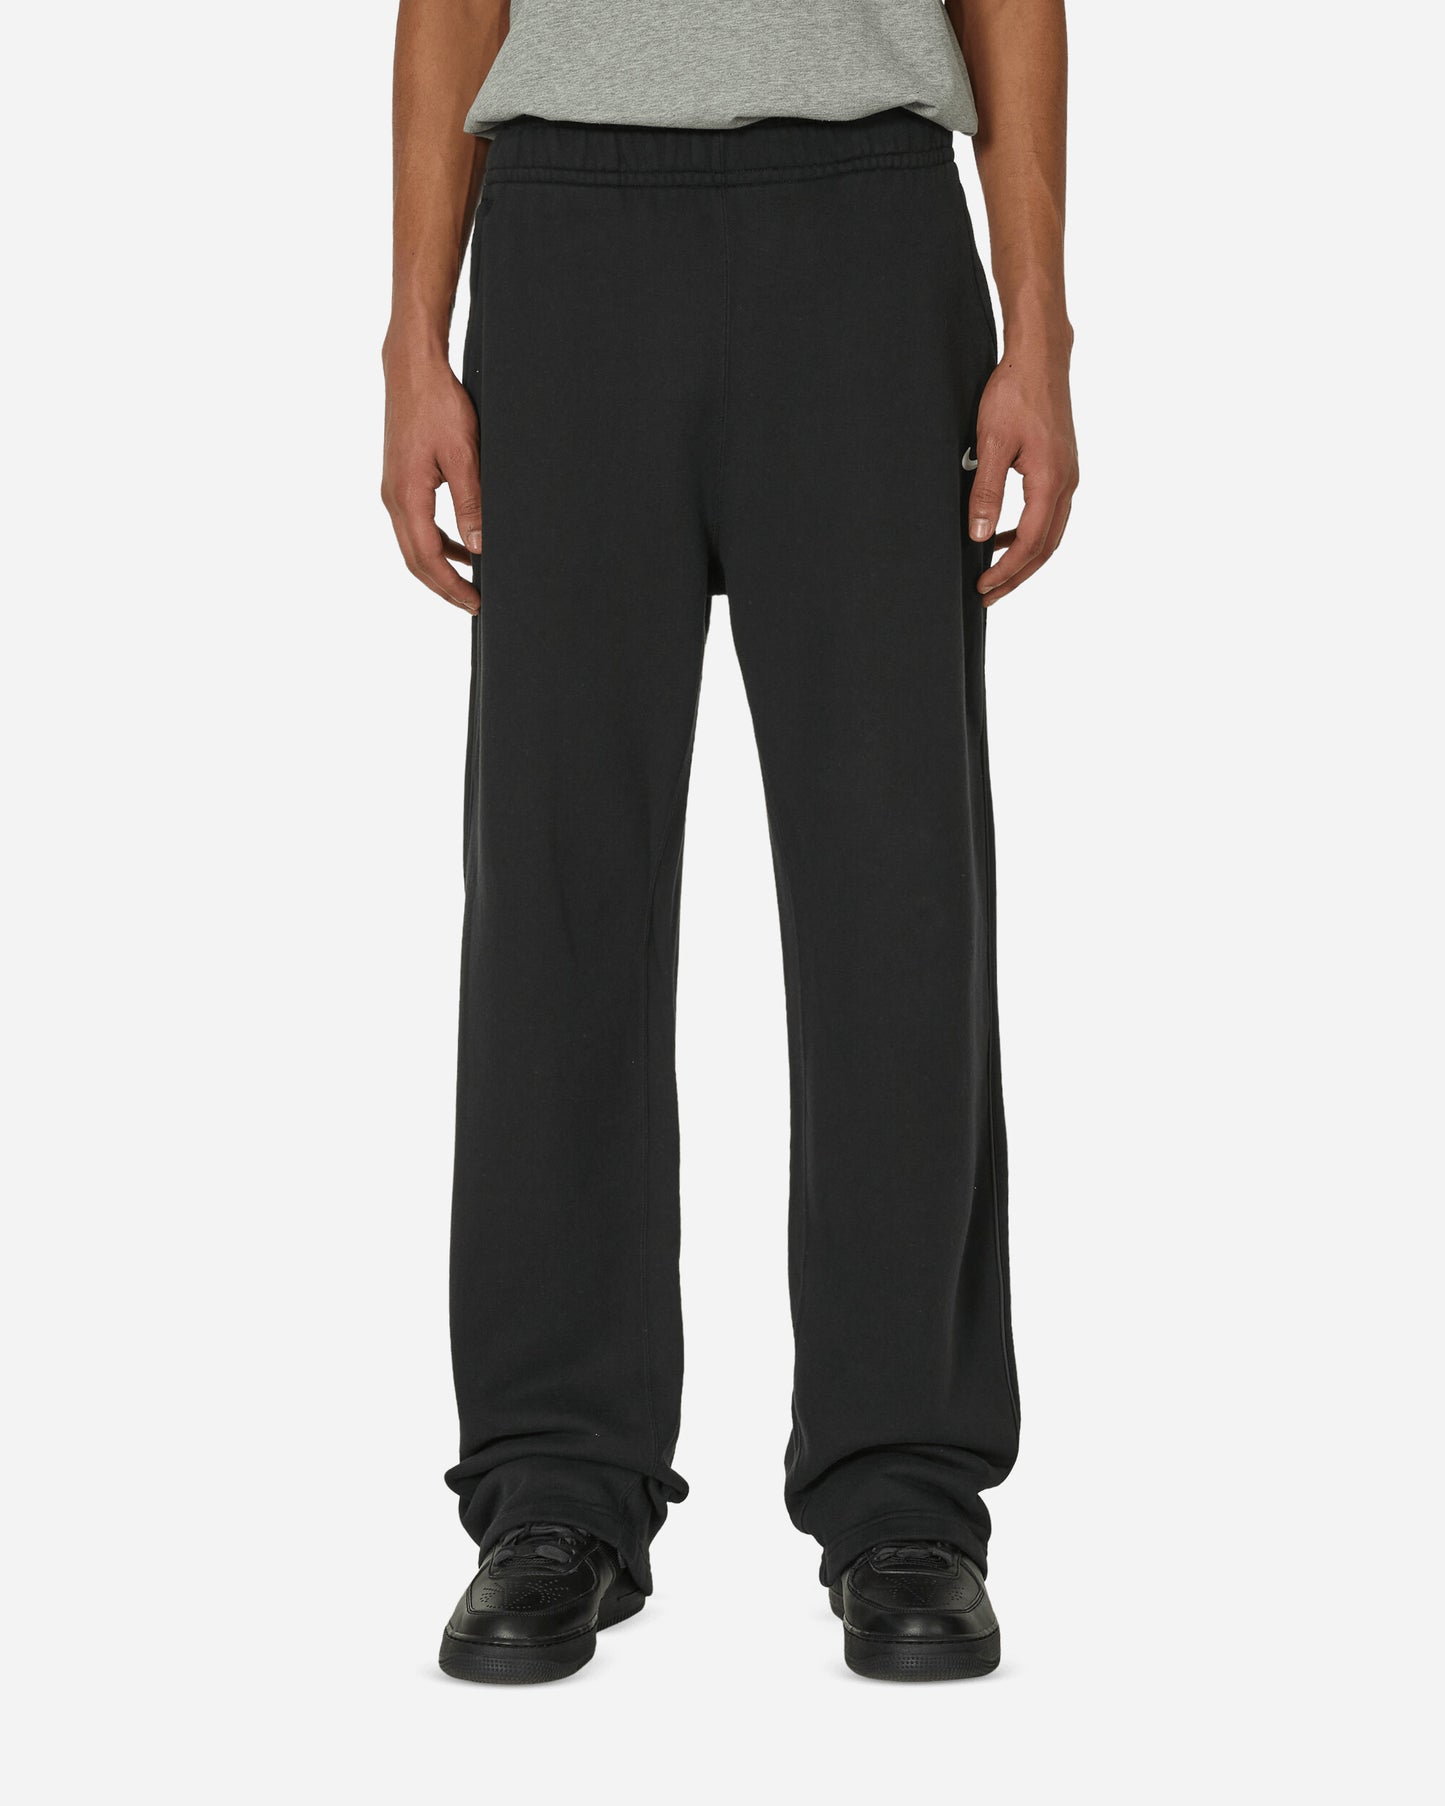 Nike M Nrg Nocta Cs Pant Flc Oh Black/Black/White Pants Sweatpants FZ4675-010